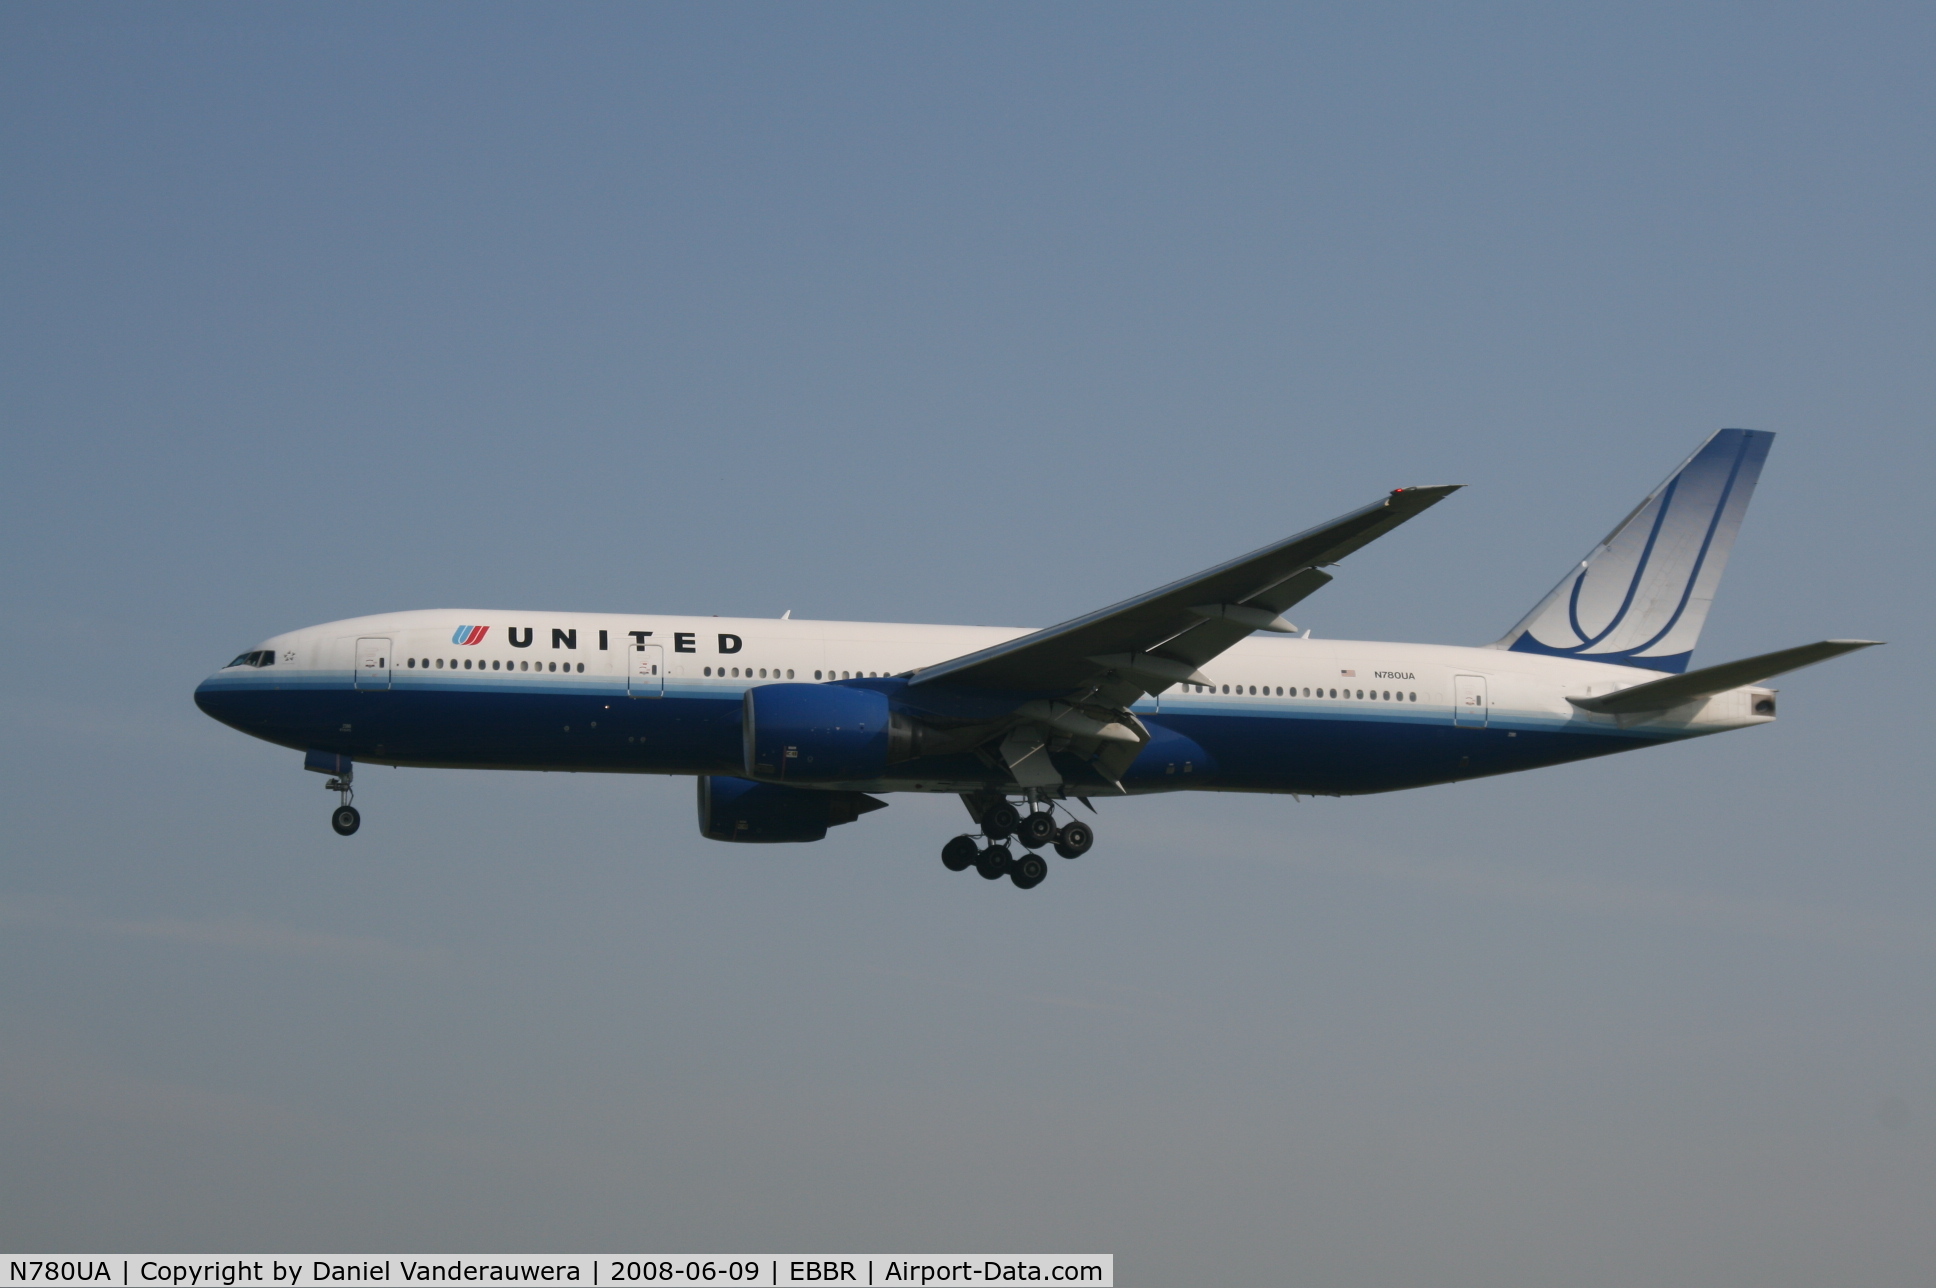 N780UA, 1996 Boeing 777-222 C/N 26944, flight UA950 is descending to rwy 25L